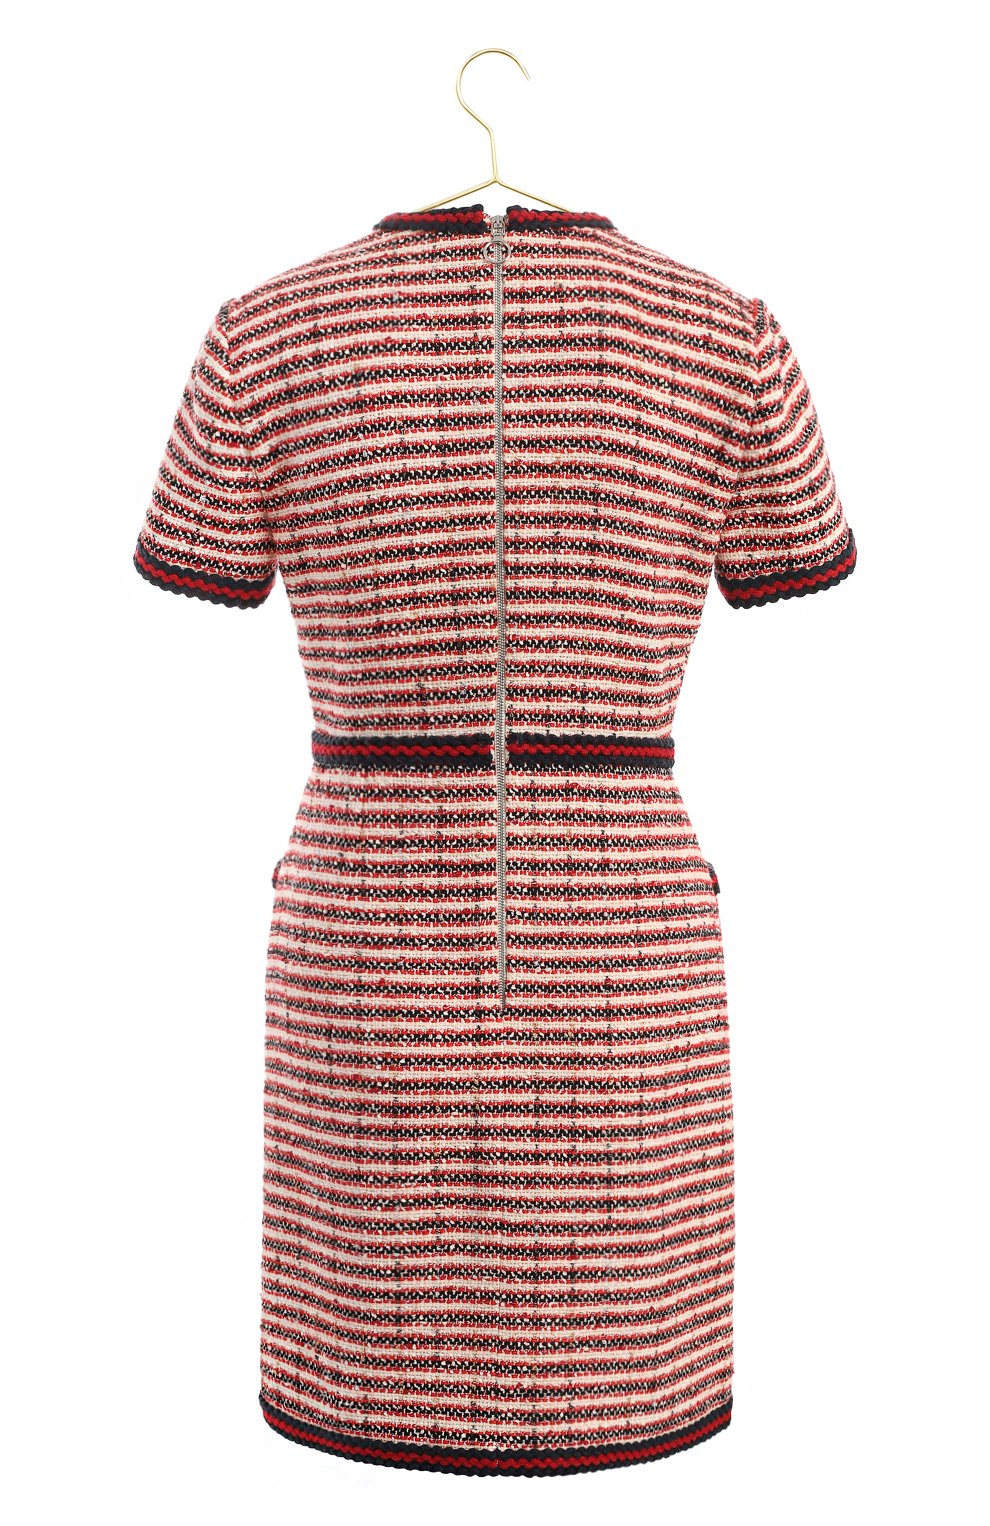 Платье из хлопка и шерсти | Gucci | Красный - 2